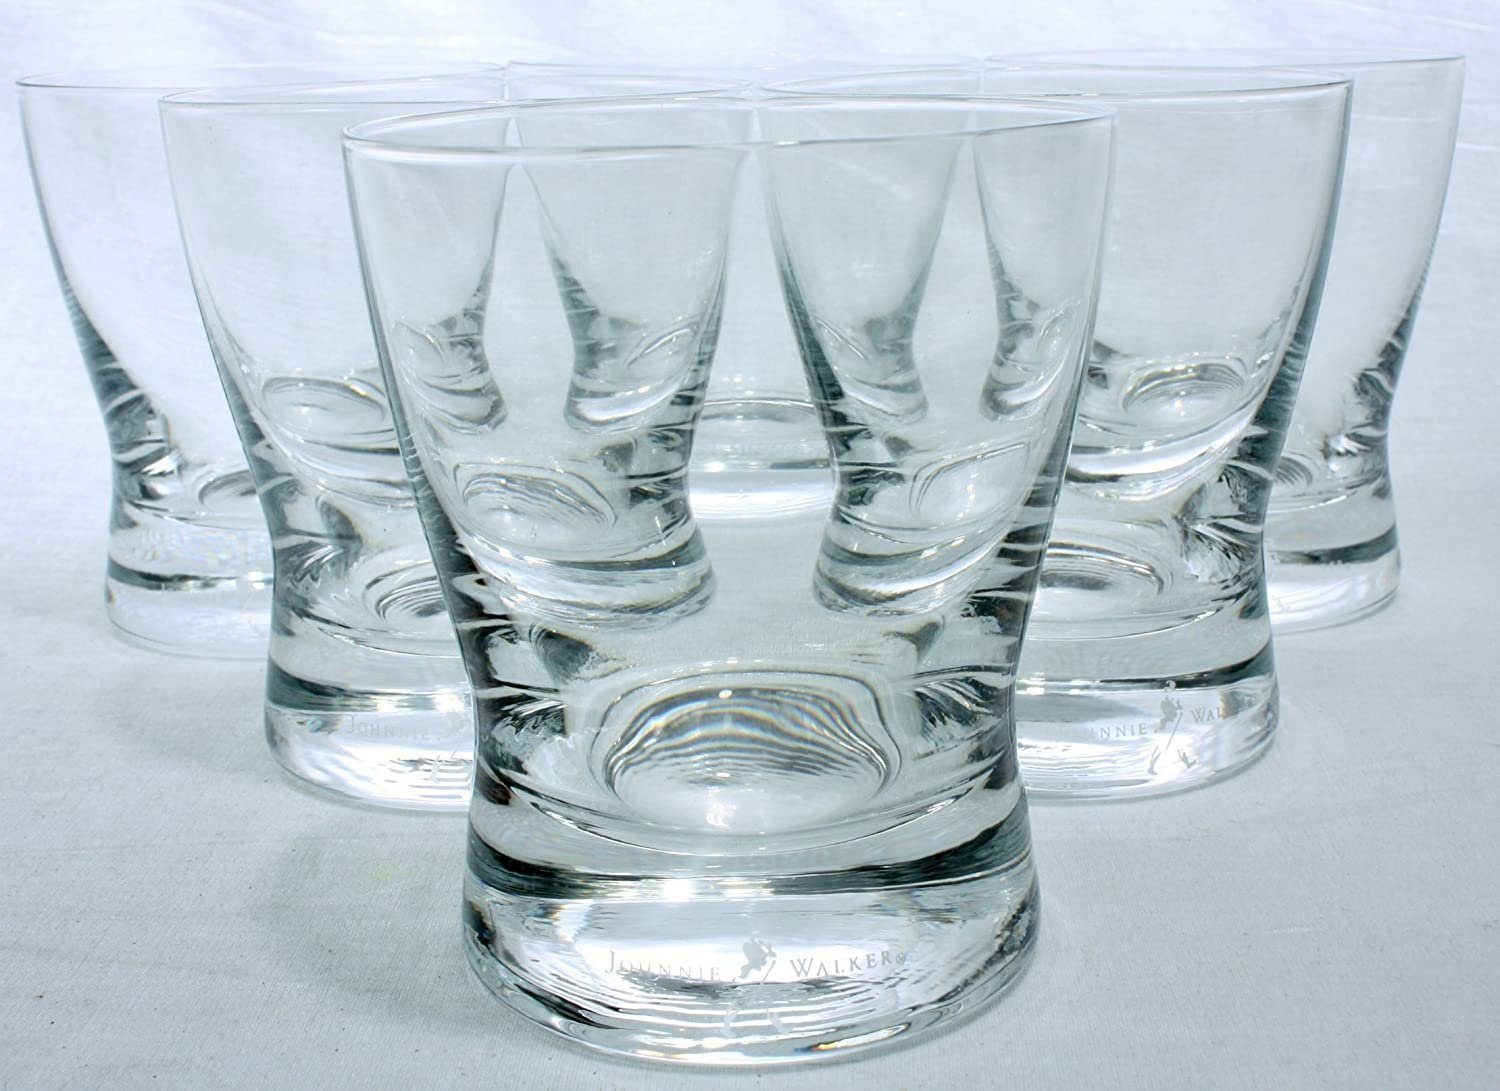 Johnnie Walker Whiskyglas 6 Whisky Gläser, 200ml Design, Scotch gläser Whiskeyglas, Qualität, aus robustem Glas, Tumbler, Gläserset, Whiskey Glas, Gläser, mit Schriftzug, Longdrink